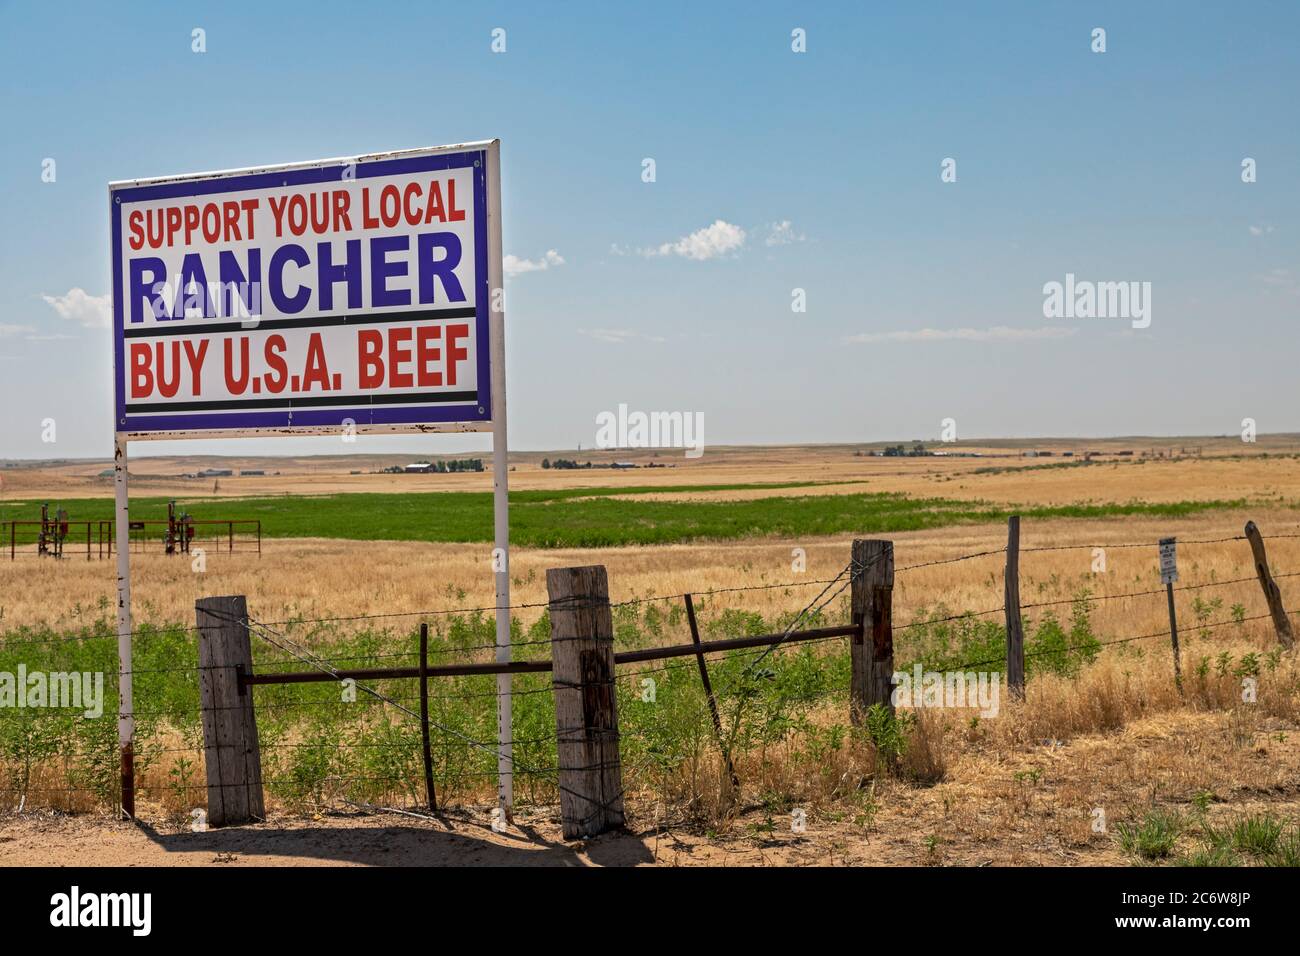 Kersey, Colorado - EIN Schild auf einer Ranch in Ost-Colorado drängt auf 'Buy U.S.A. Beef'. Stockfoto